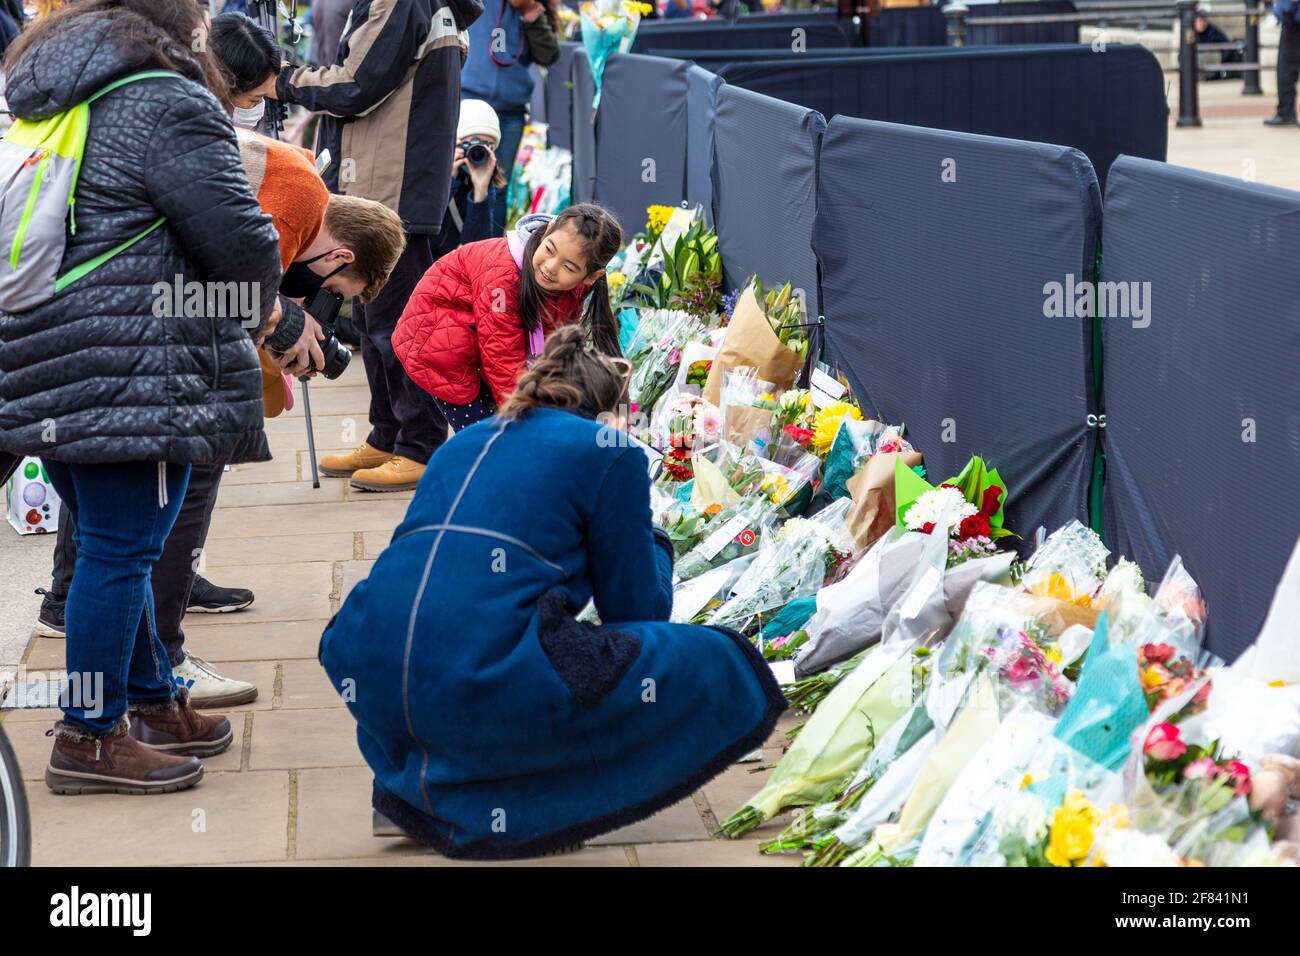 11 avril 2021, Londres, Royaume-Uni - des gens qui jettent des fleurs en hommage au prince Philip, duc d'Édimbourg devant le palais de Buckingham après sa mort le 9 avril Banque D'Images